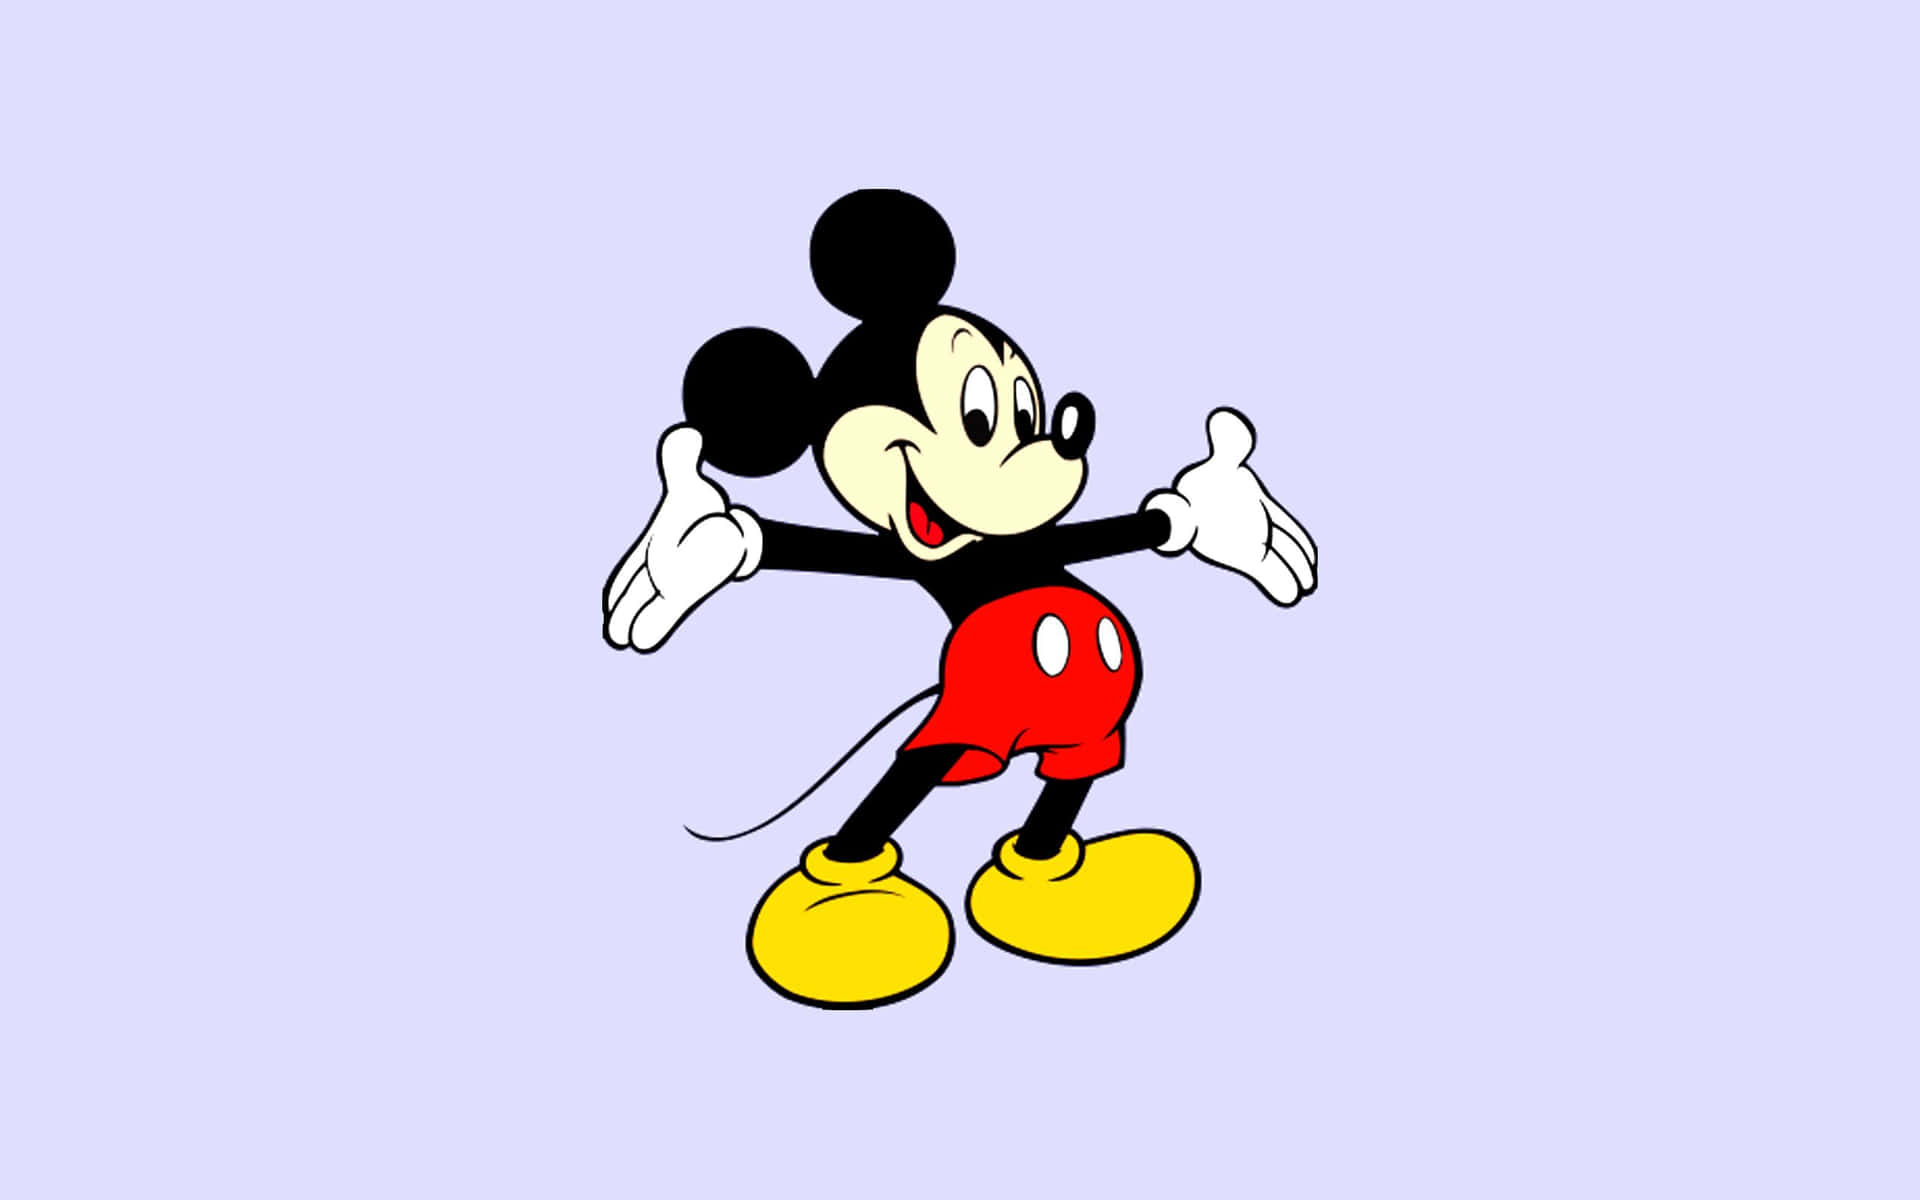 Klassisk Mickey Mouse glædesfuldt vinkende med et skip i hans skrittet.